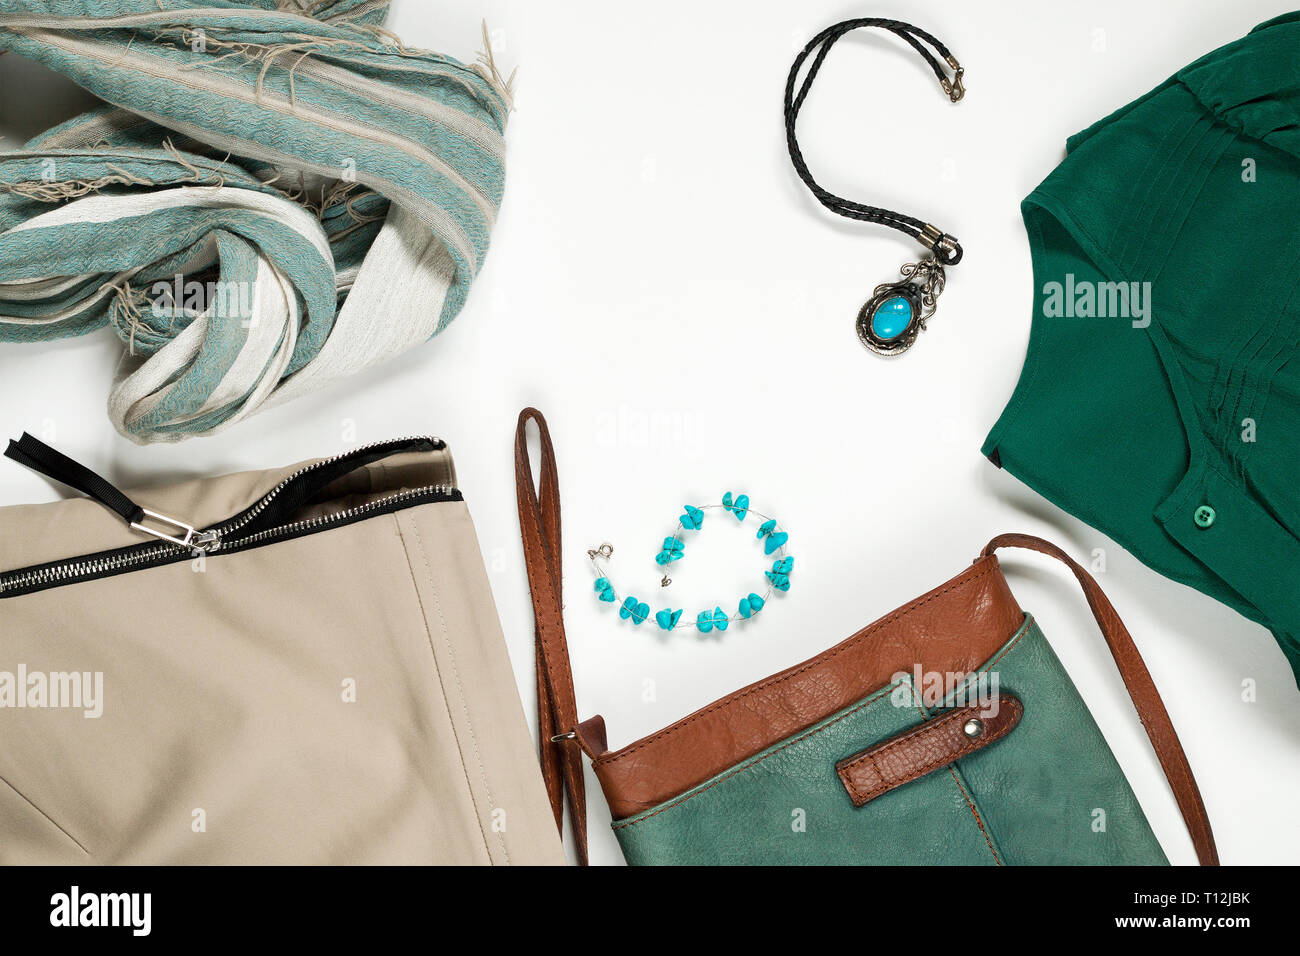 Piatto femminile laico trendy moda abiti e accessori collage su bianco, vista dall'alto Foto Stock